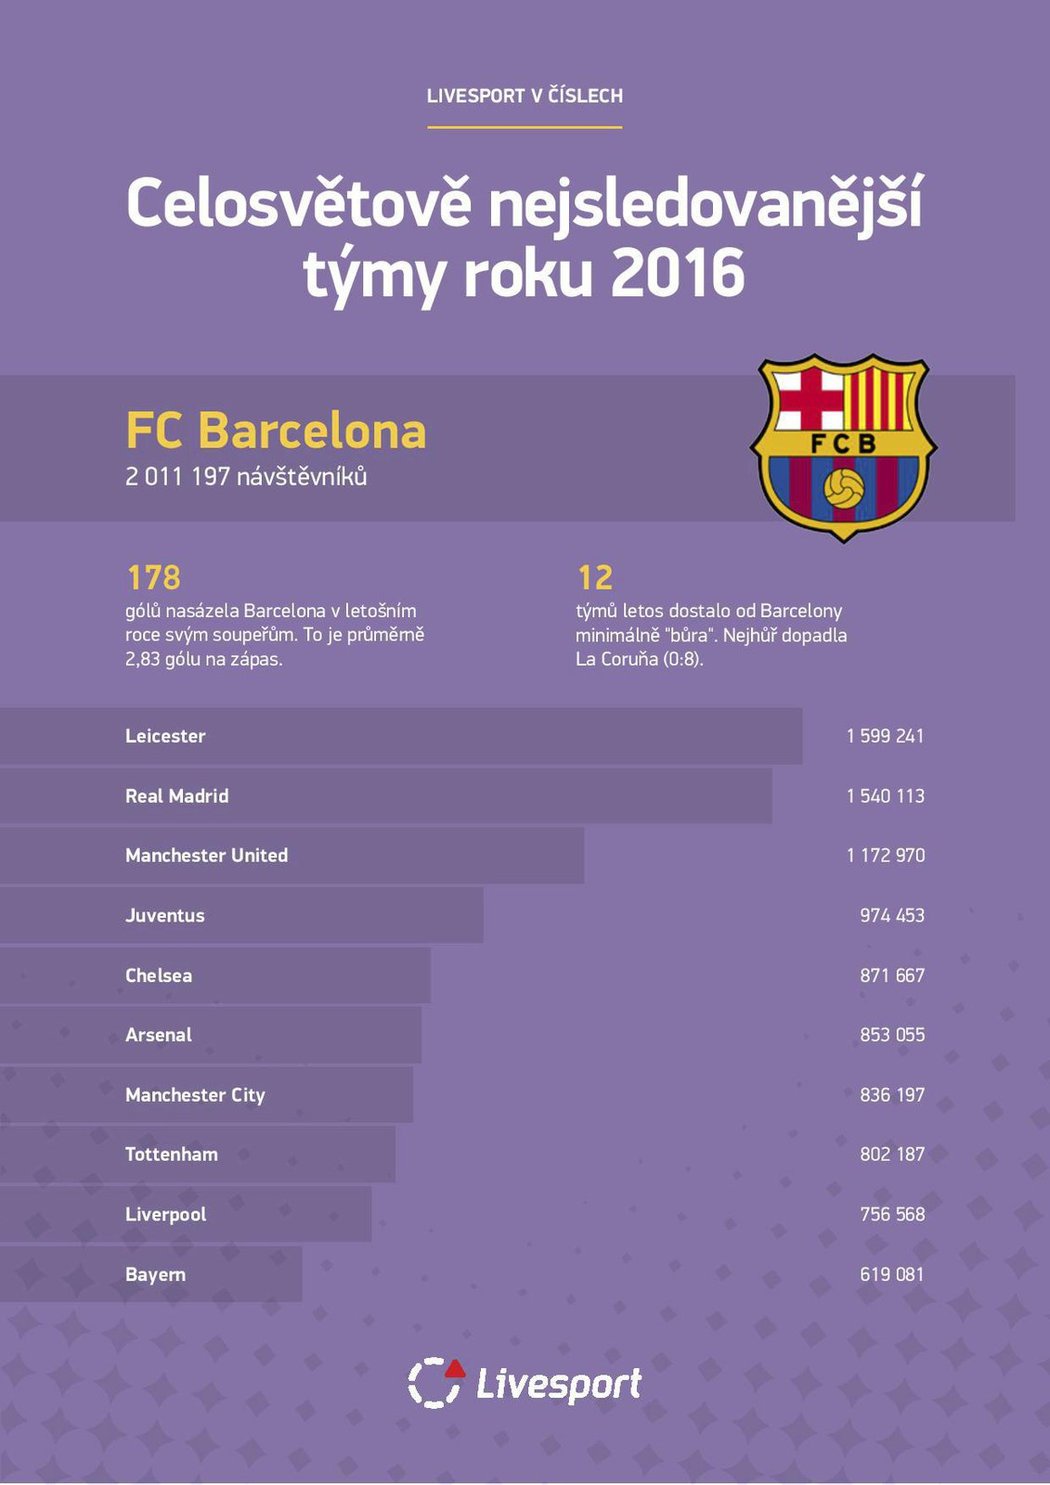 Nejúspěšnějším klubem byla pro změnu španělská Barcelona